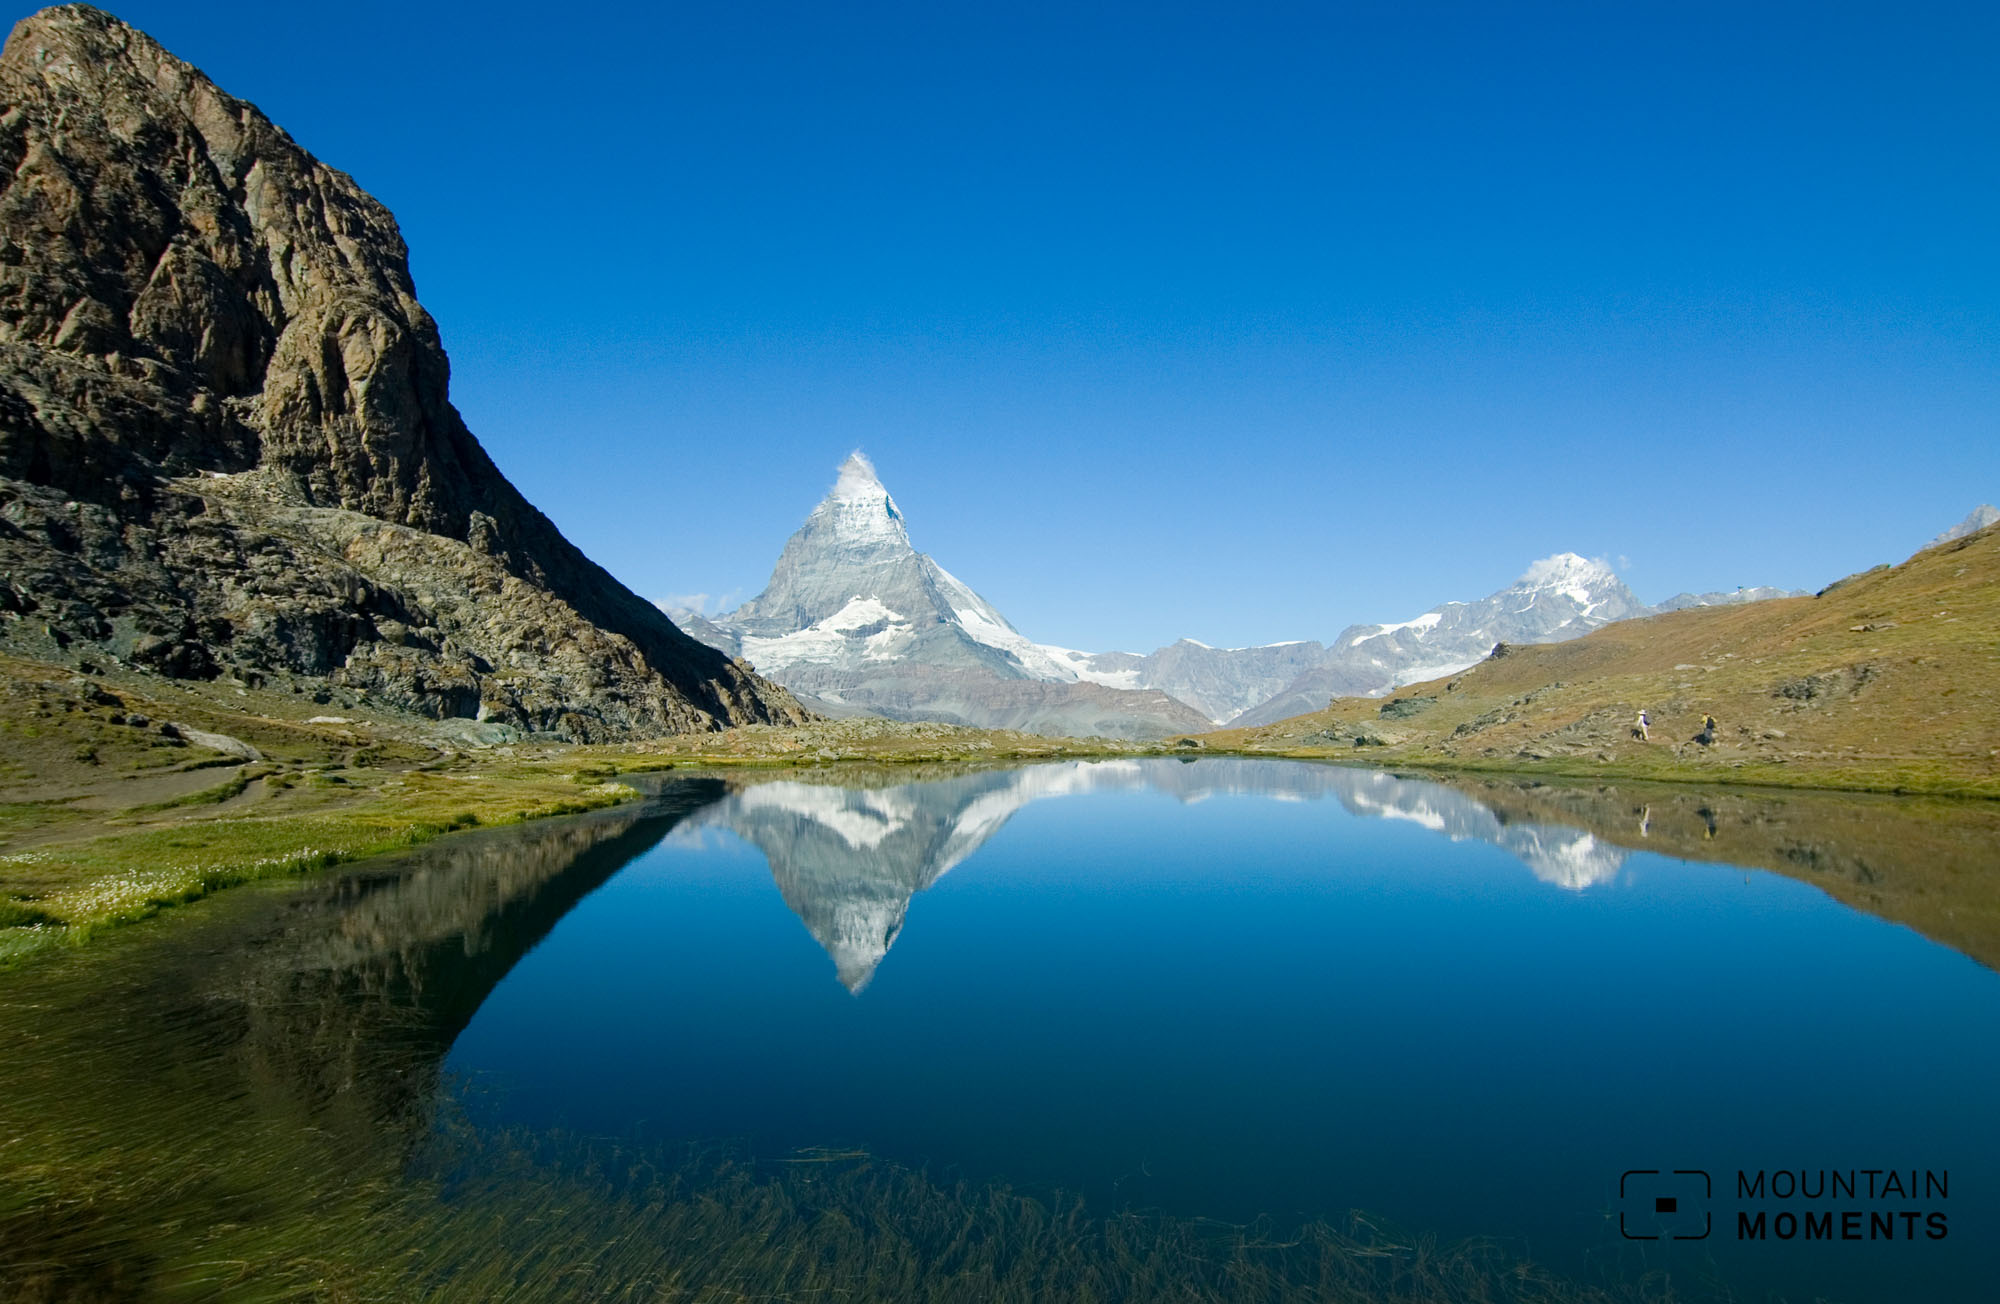 Panorama-Wanderung vom Gornergrat zum Riffelsee mit traumhaftem Matterhorn-Blick